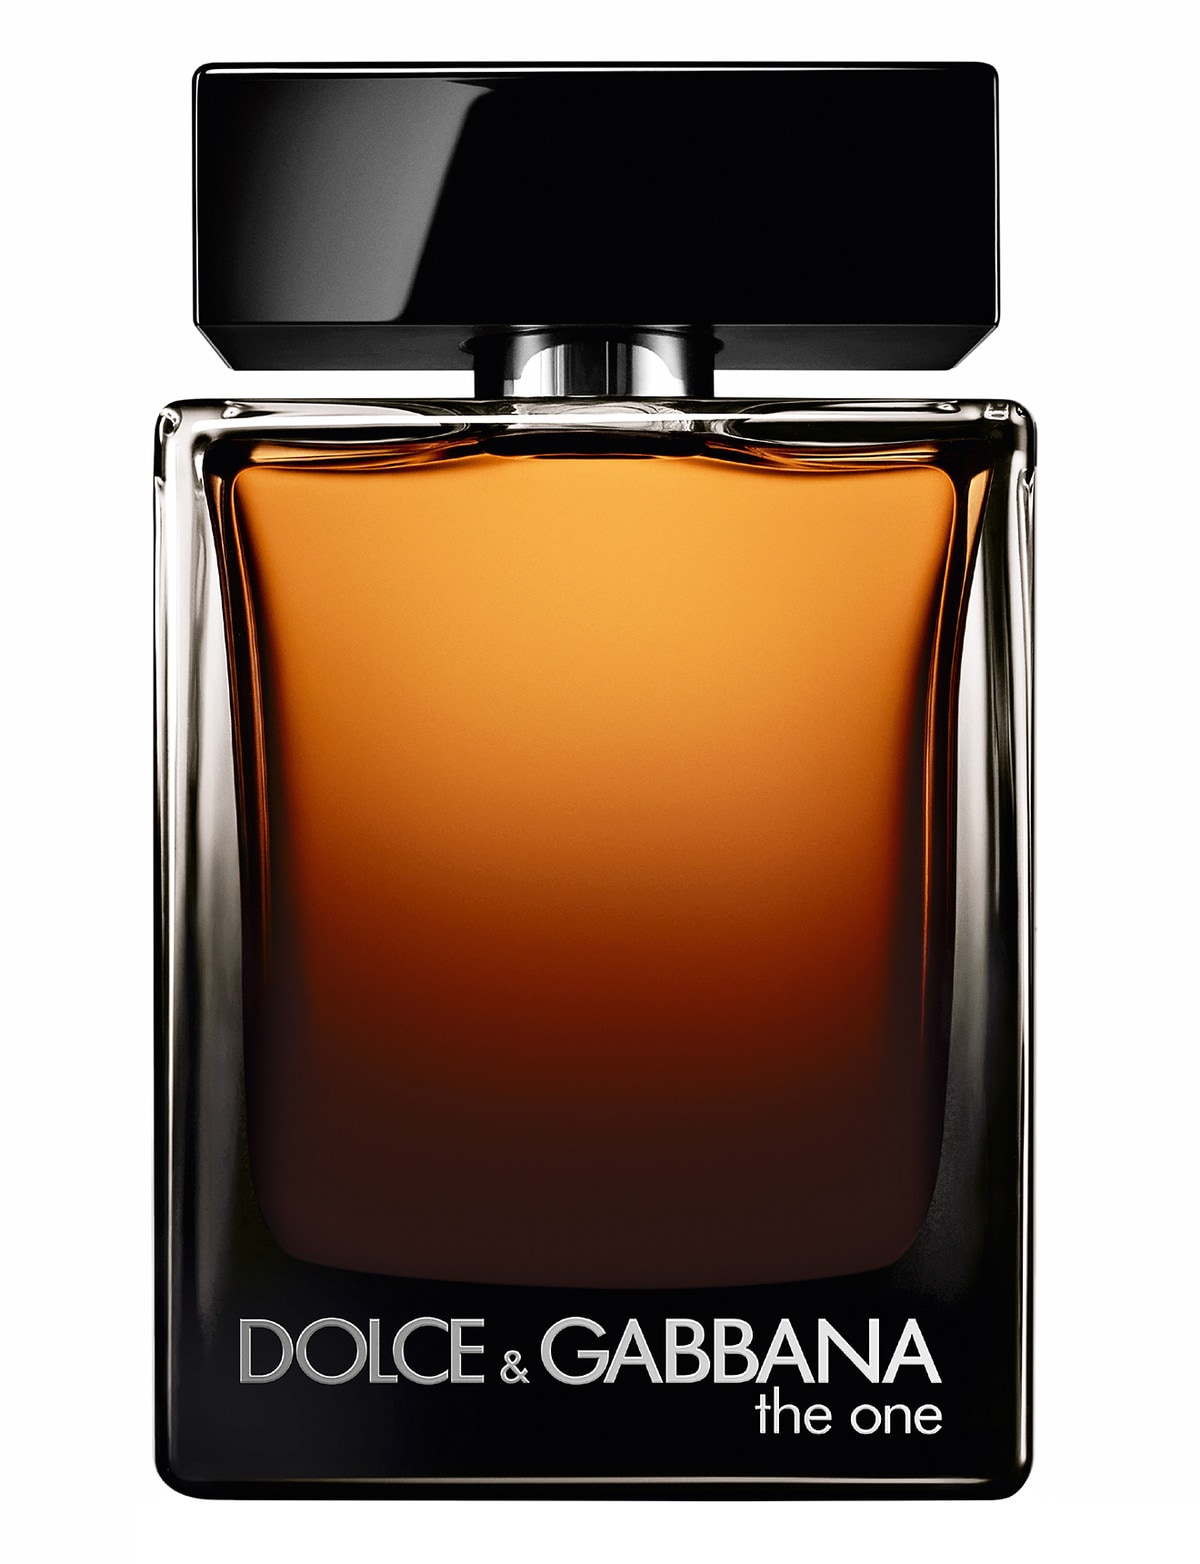 Дольче габбана ван отзывы. Дольче Габбана the one 100. Dolce & Gabbana the one Eau de Parfum 100мл. Дольче Габбана the one 100ml. EDP Дольче Габбана the one.